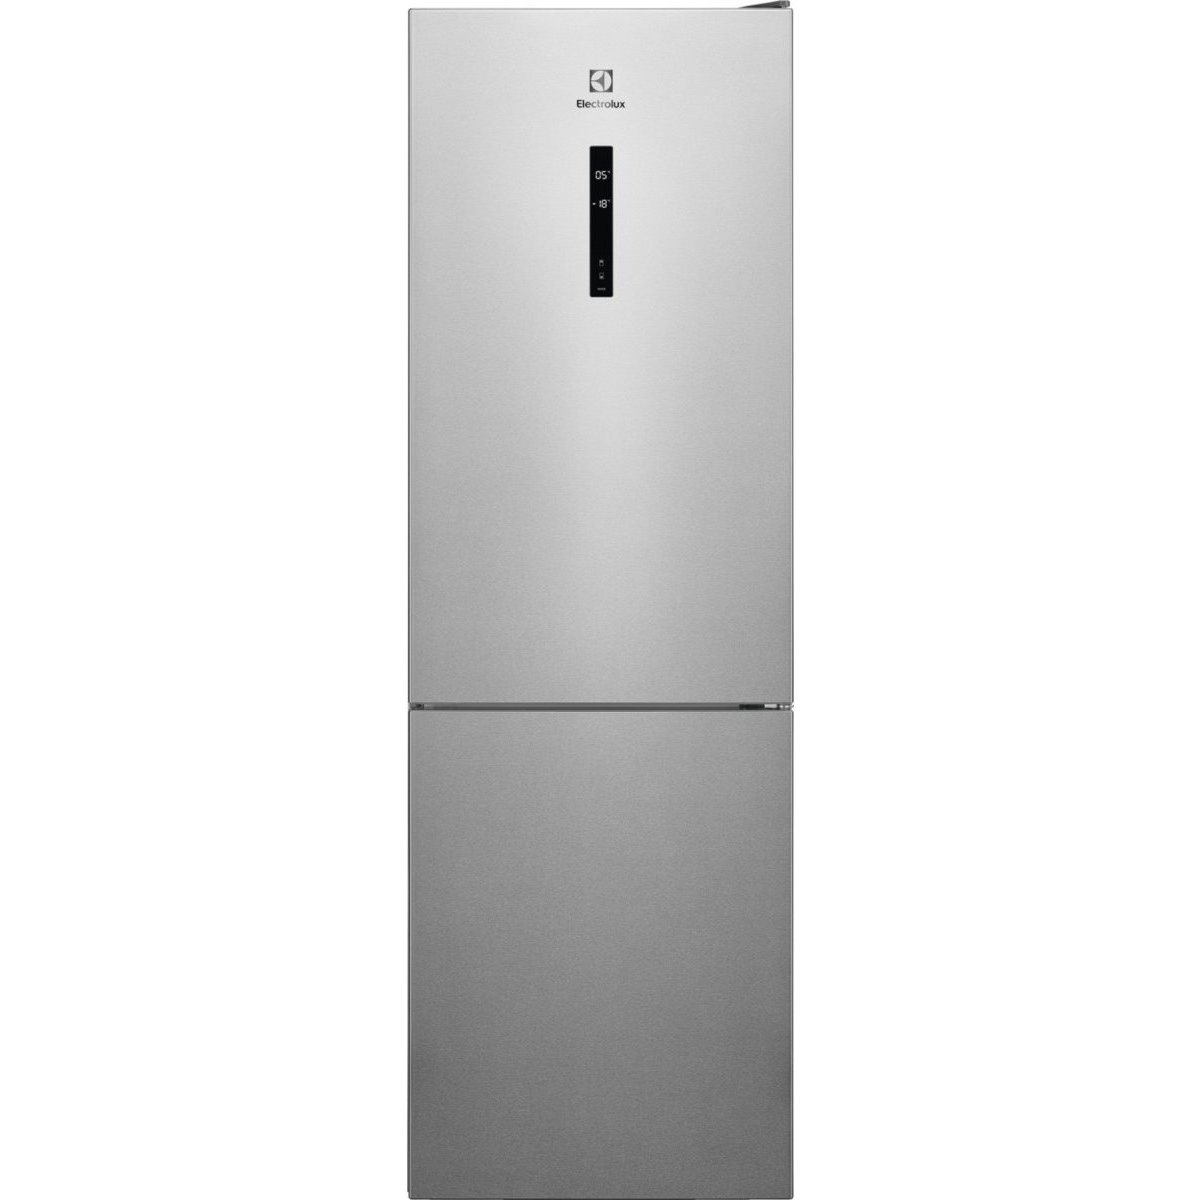 Холодильники Electrolux LNC 7ME32 X3 нержавейка